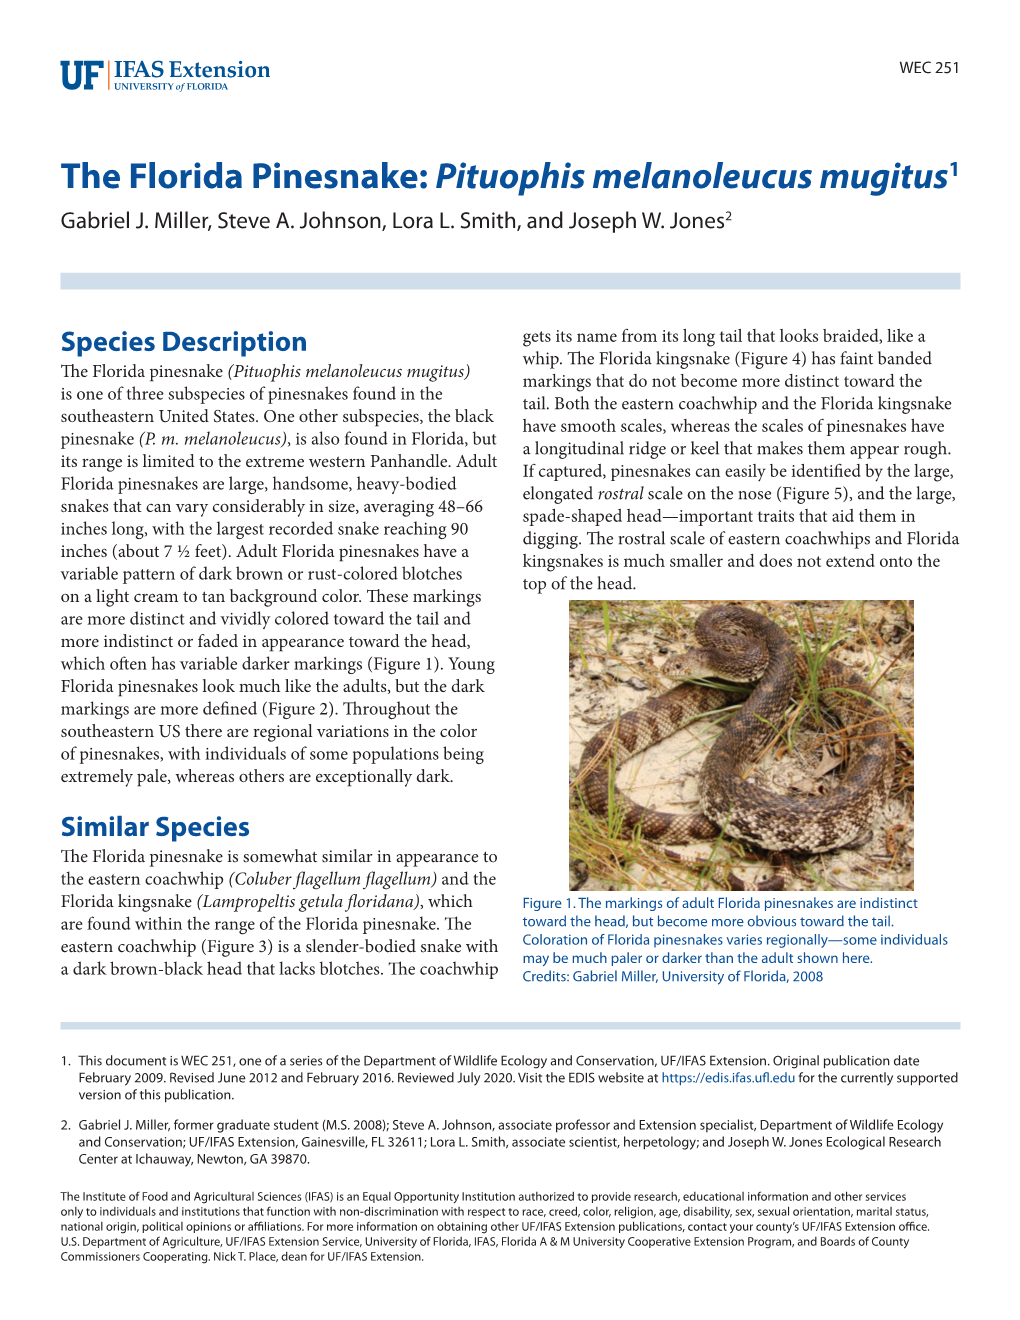 The Florida Pinesnake: Pituophis Melanoleucus Mugitus1 Gabriel J